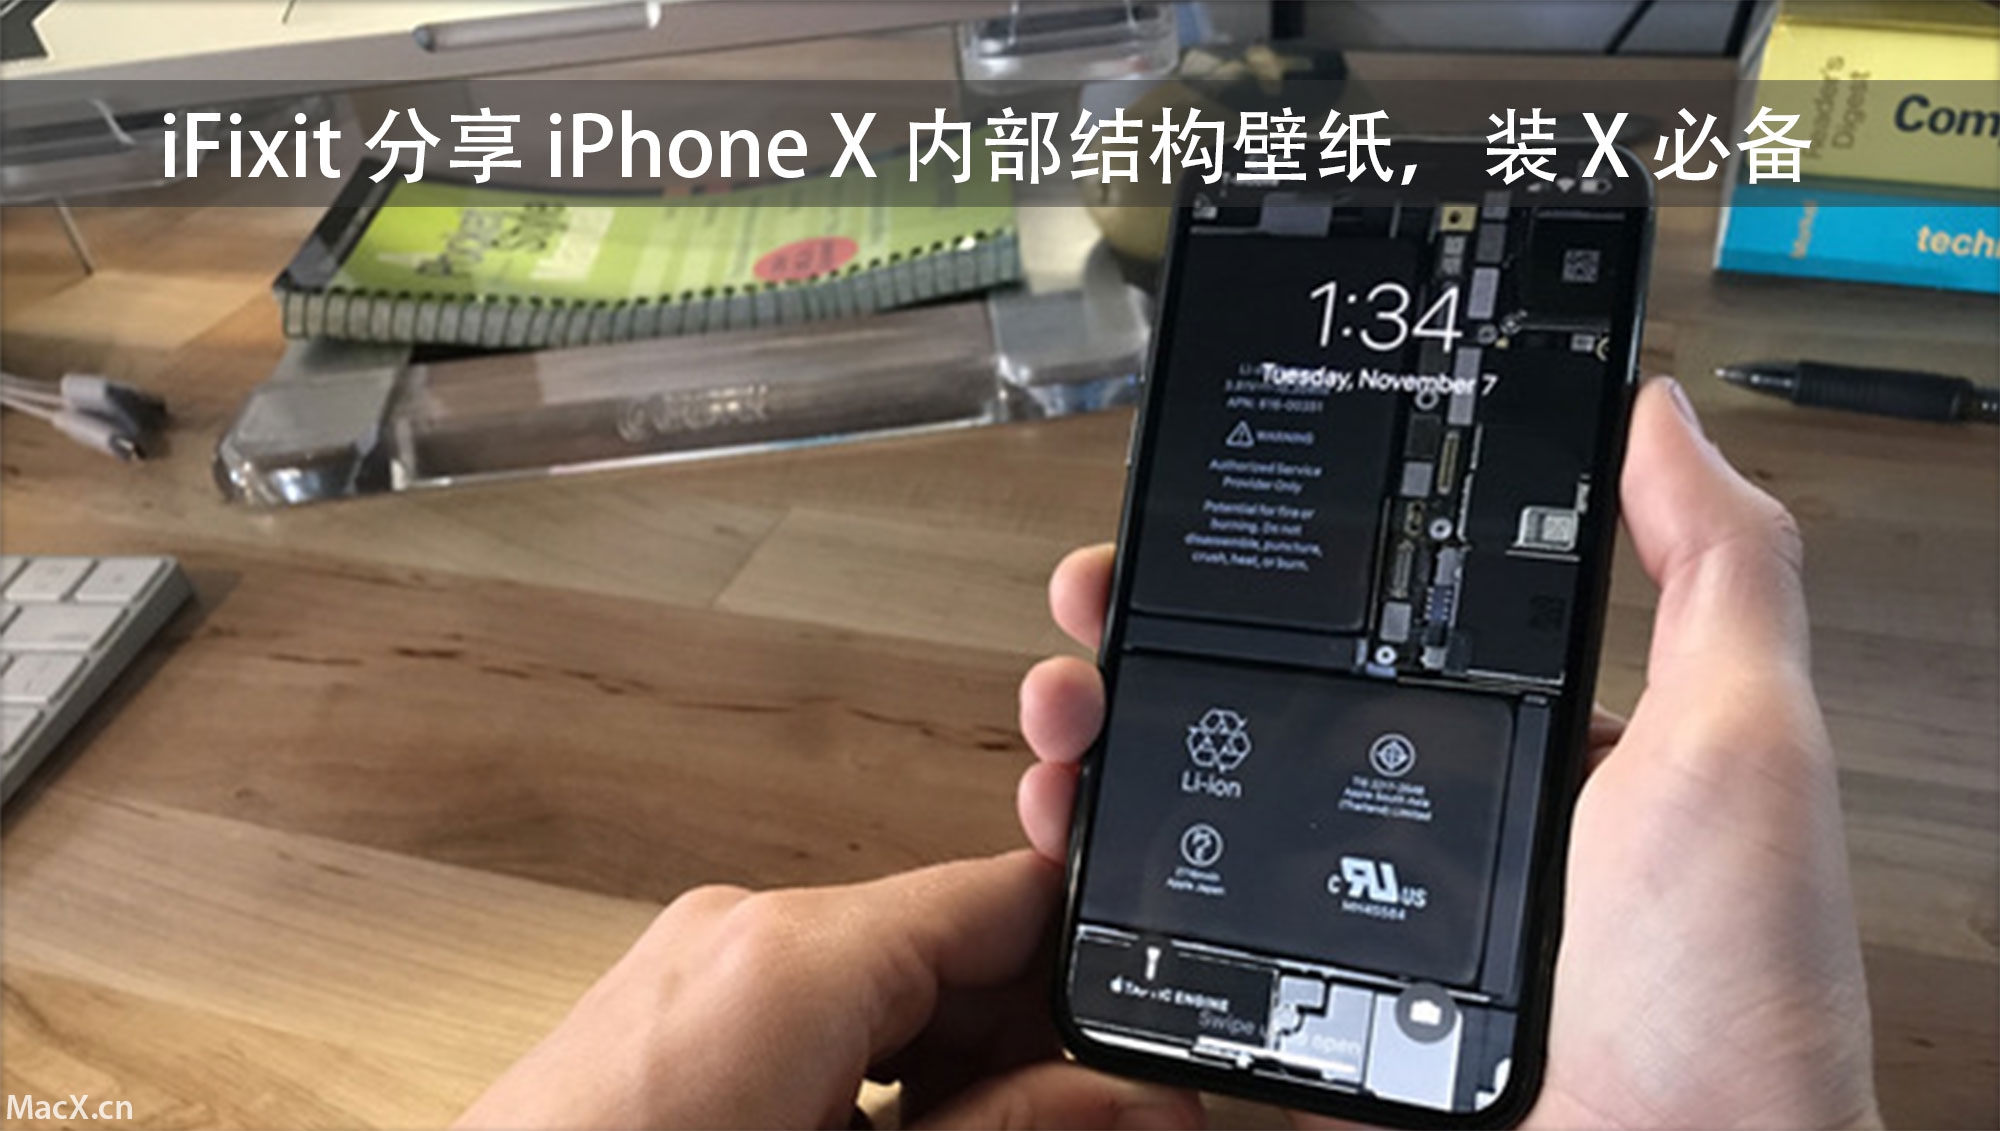 ifixit 分享 iphone x 内部结构壁纸,装 x 必备